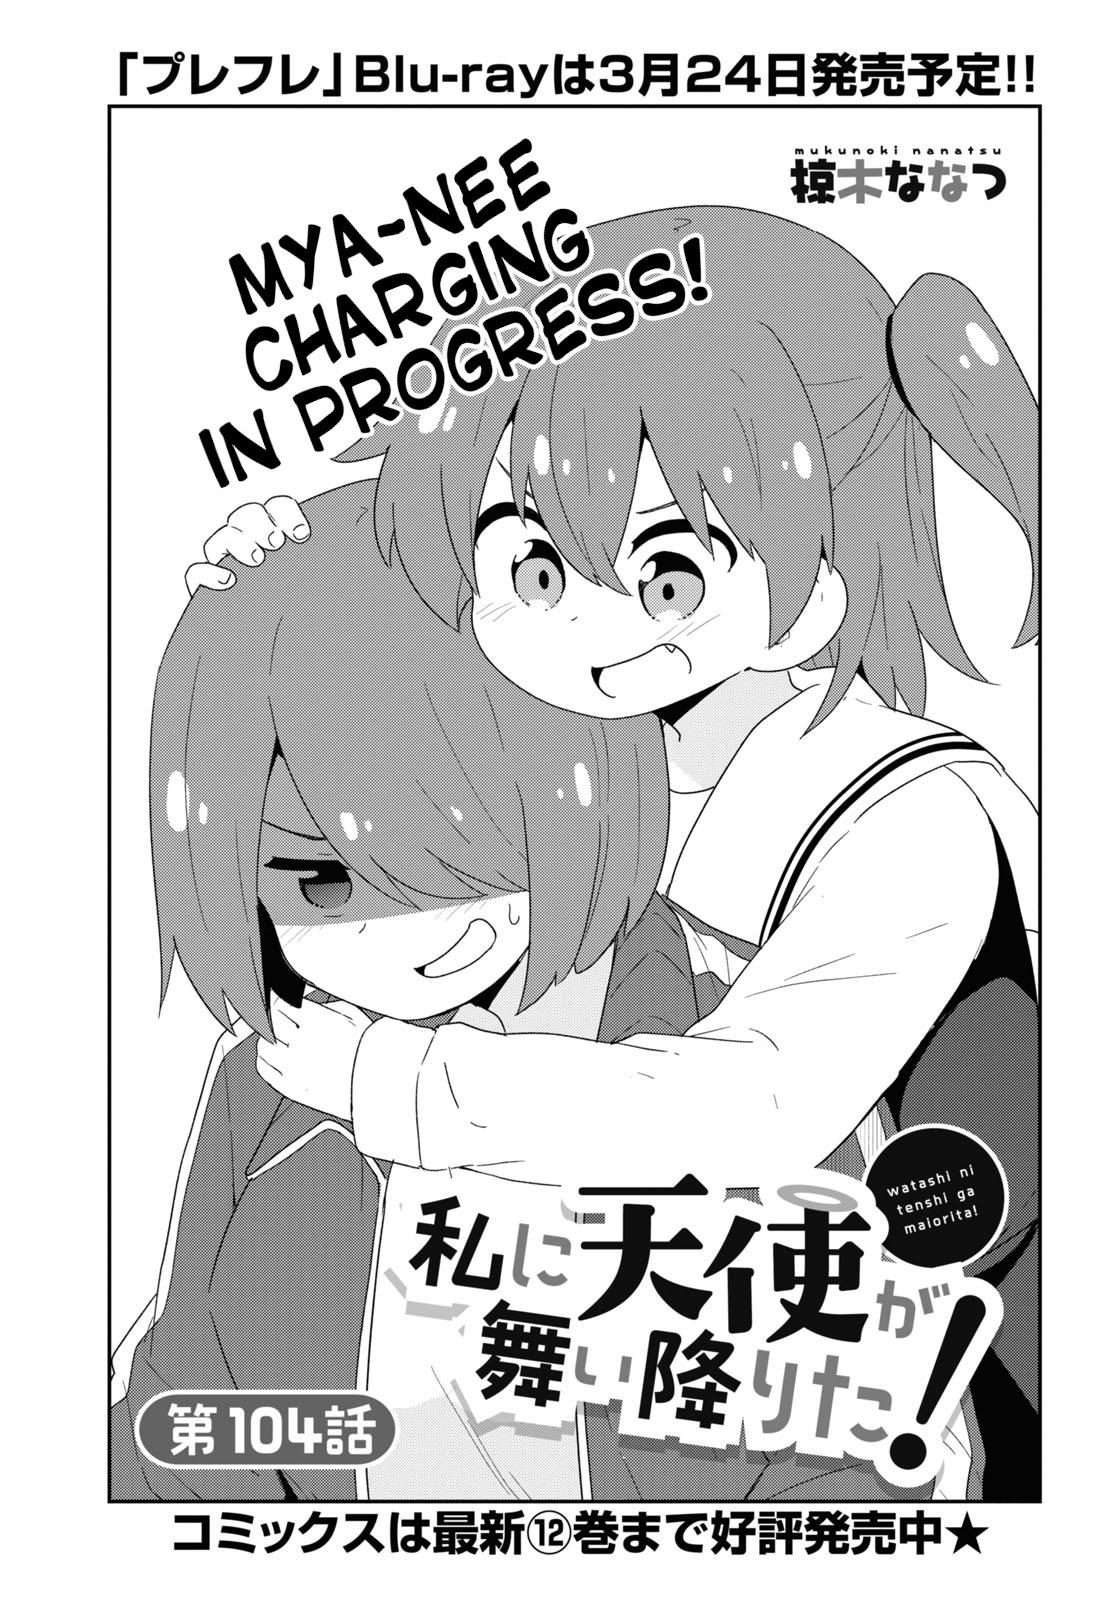 Read Watashi Ni Tenshi Ga Maiorita! Chapter 99 - Manganelo